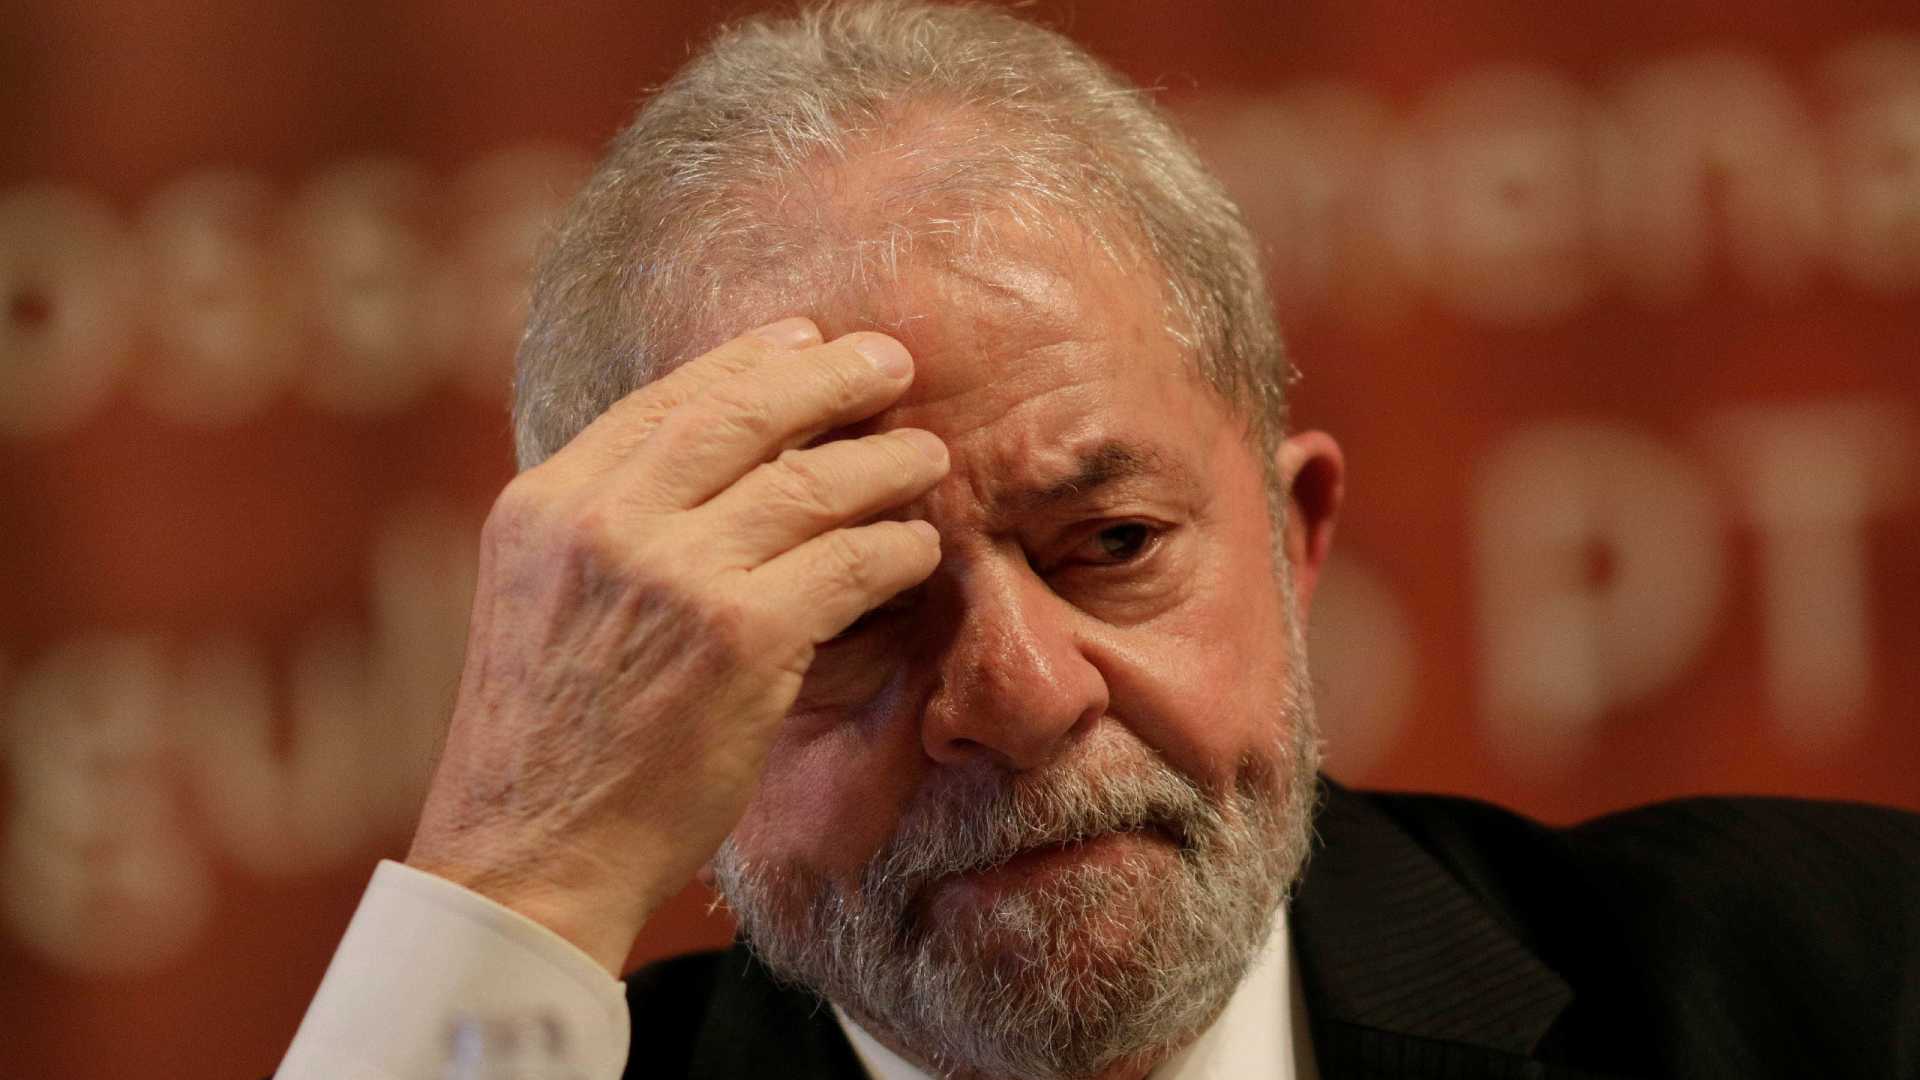 MP pede condenação de Lula na ação do sítio de Atibaia